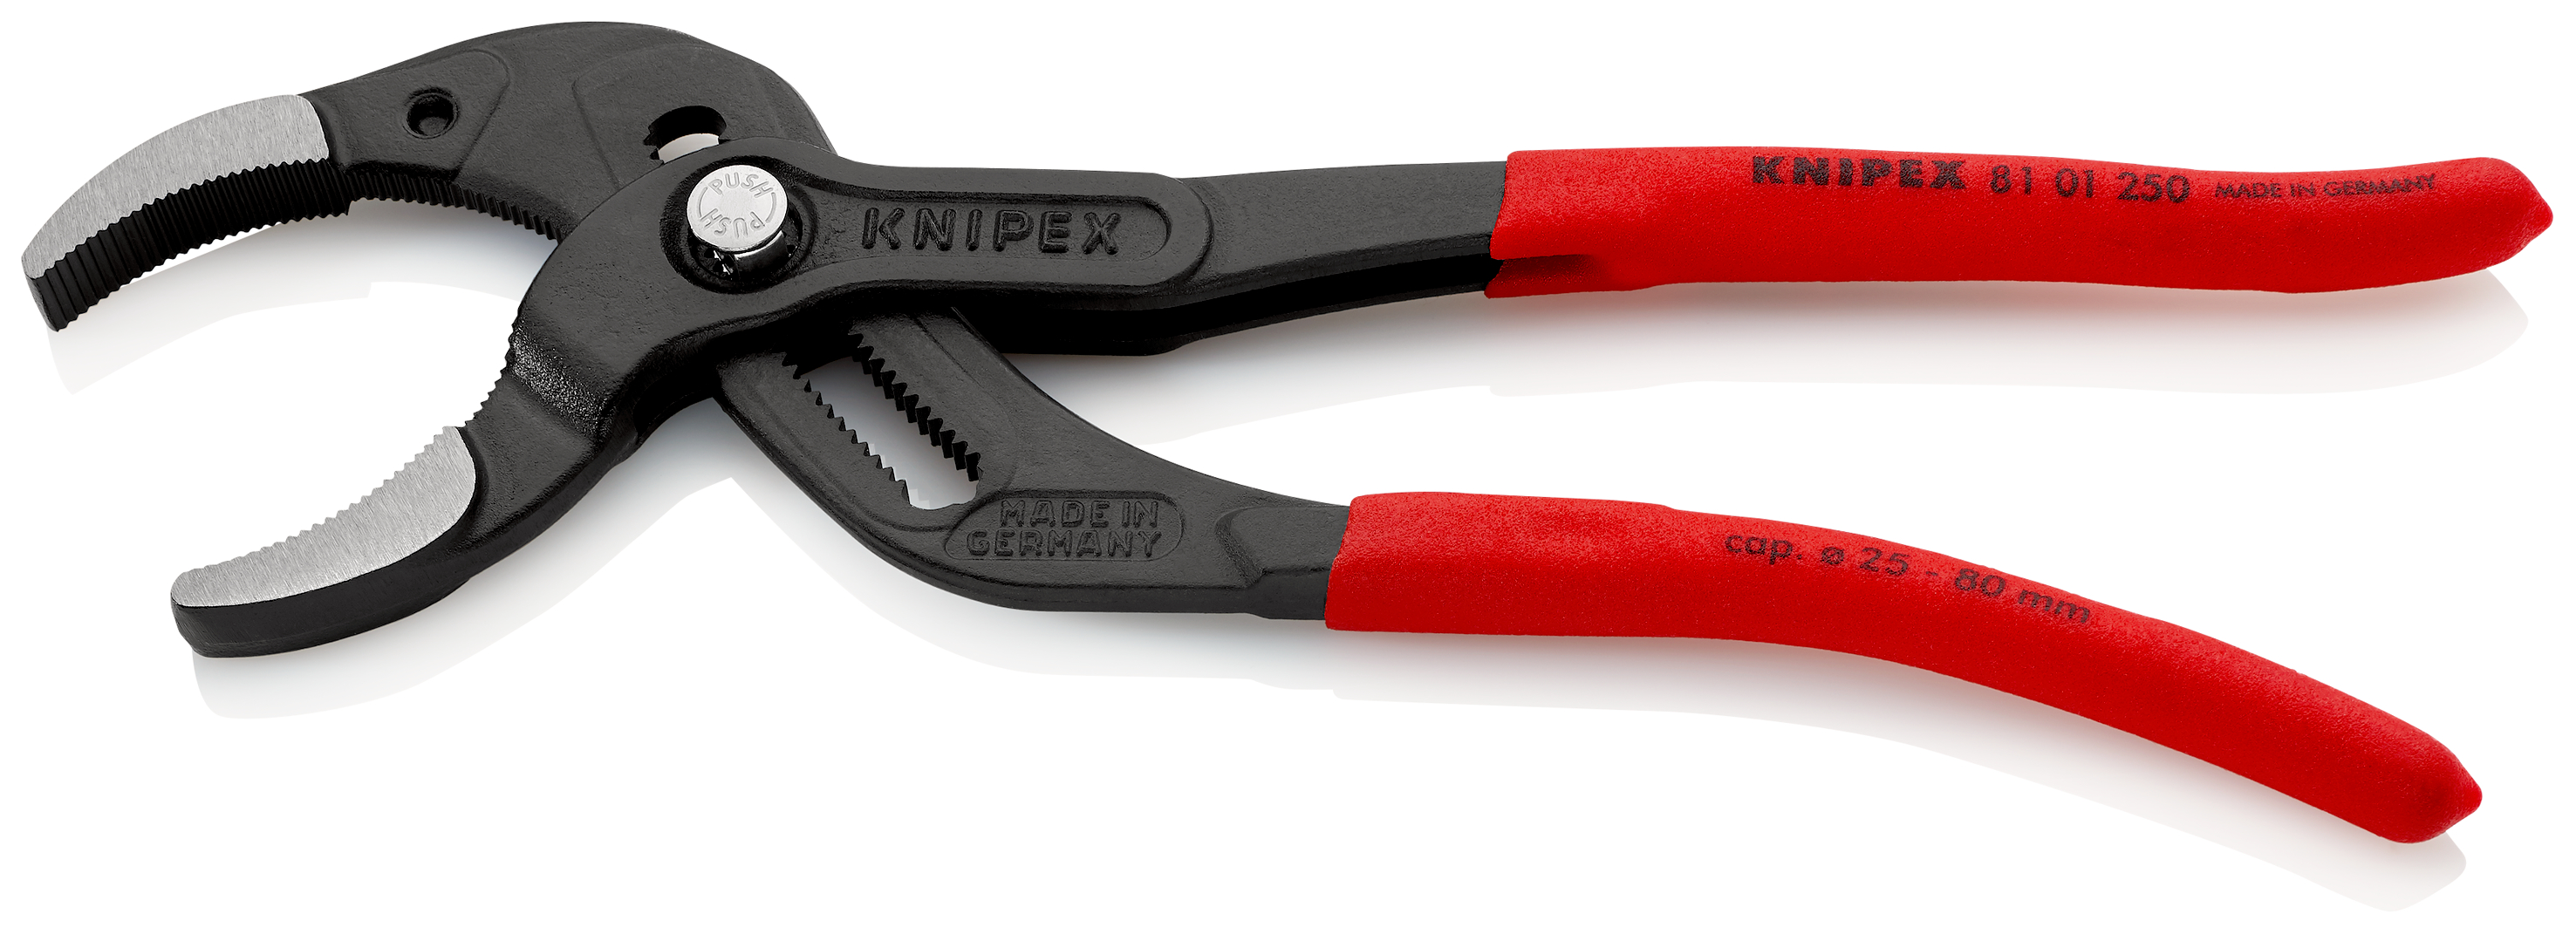 KNIPEX Siphon- und Connectorenzange "SpeedGrip" mit rutschhemmendem Kunststoff überzogen schwarz atr